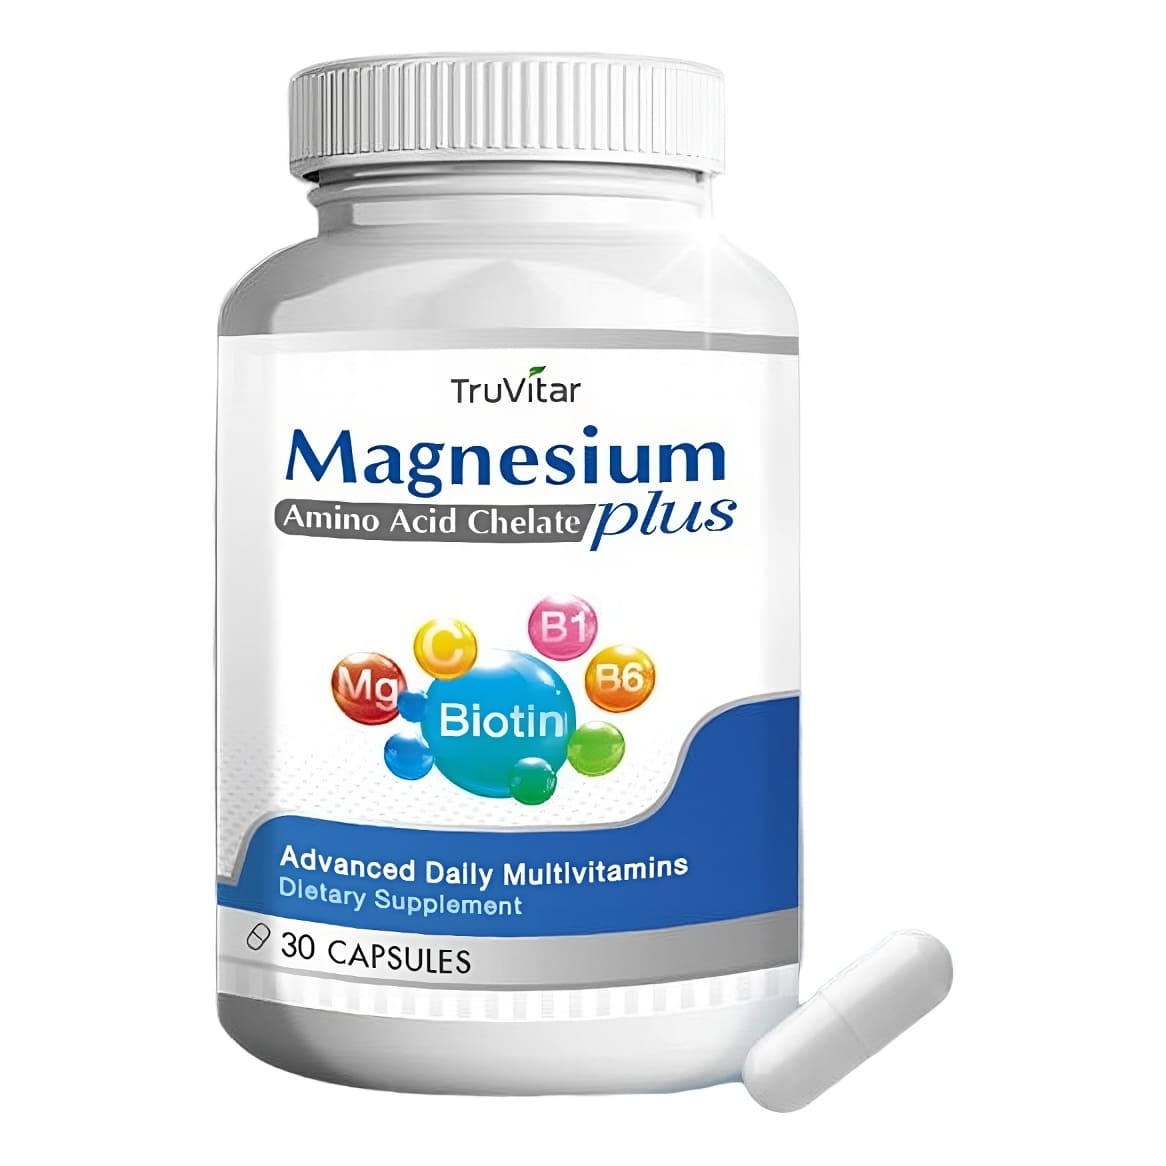 Мультивитамины TruVitar Magnesium Plus, 30 капсул